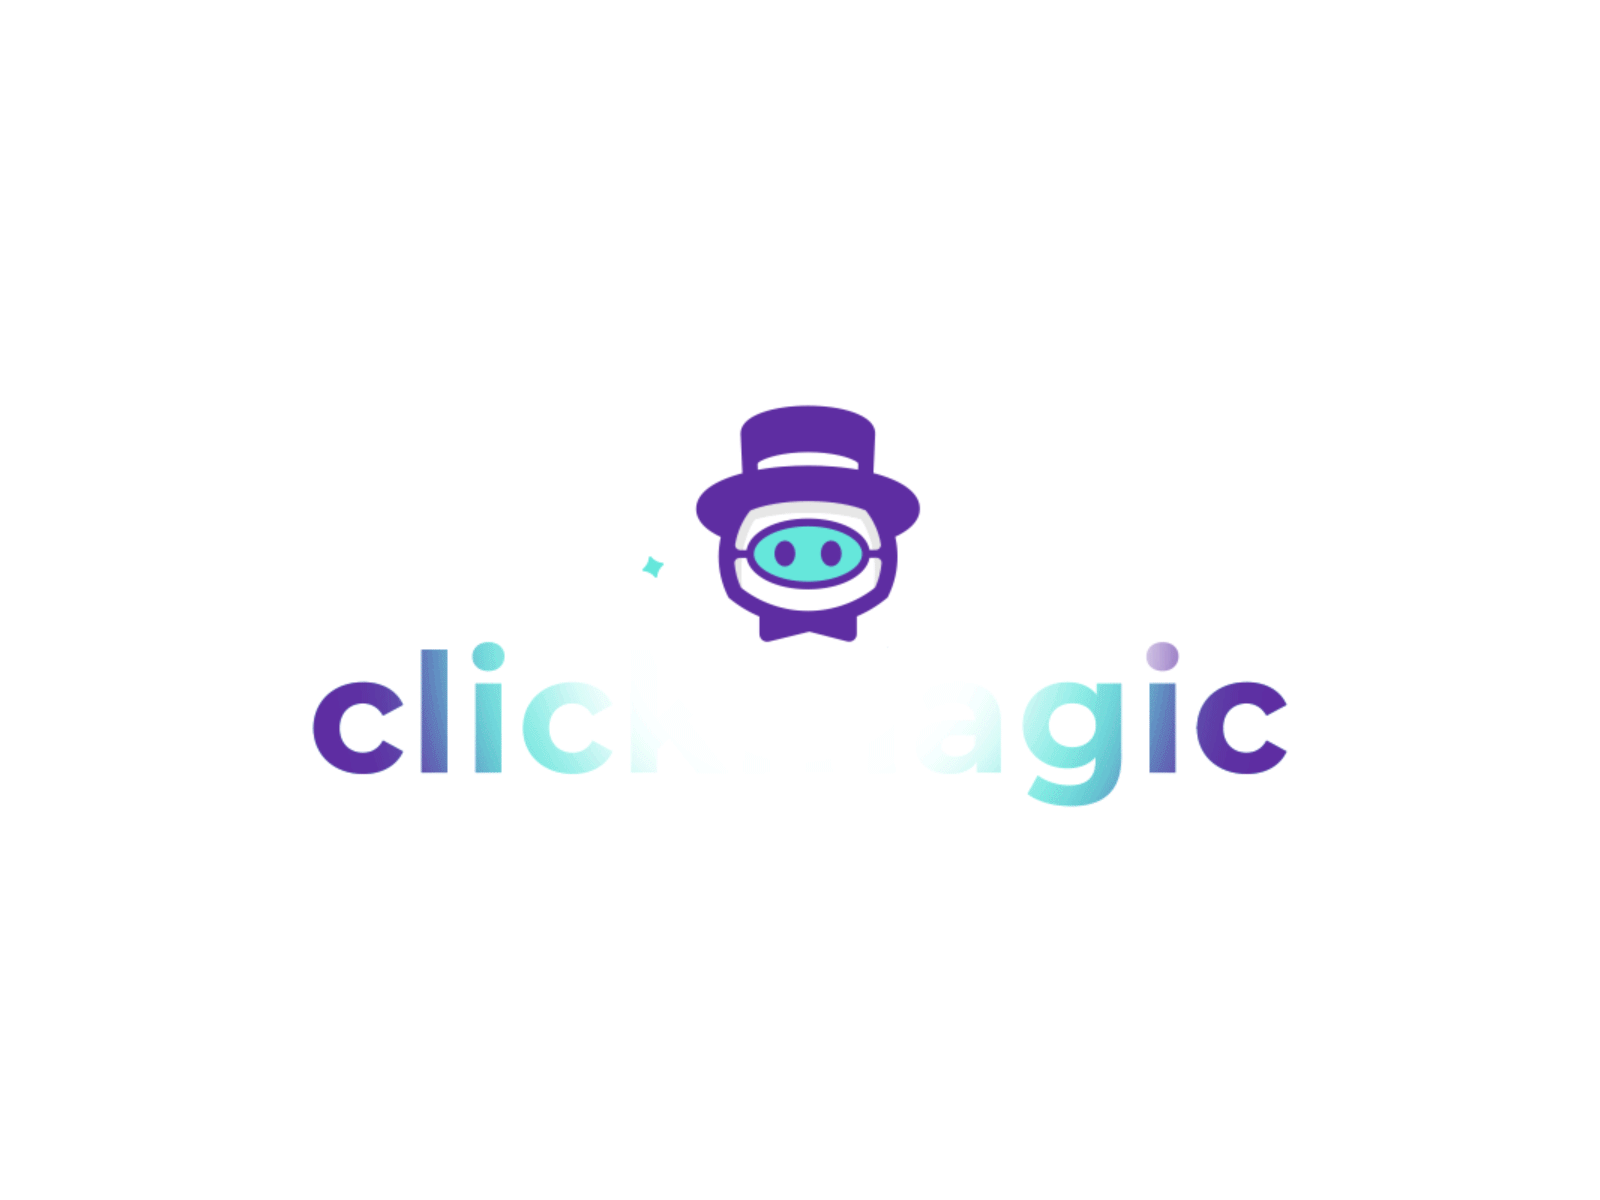 Magic logo animation